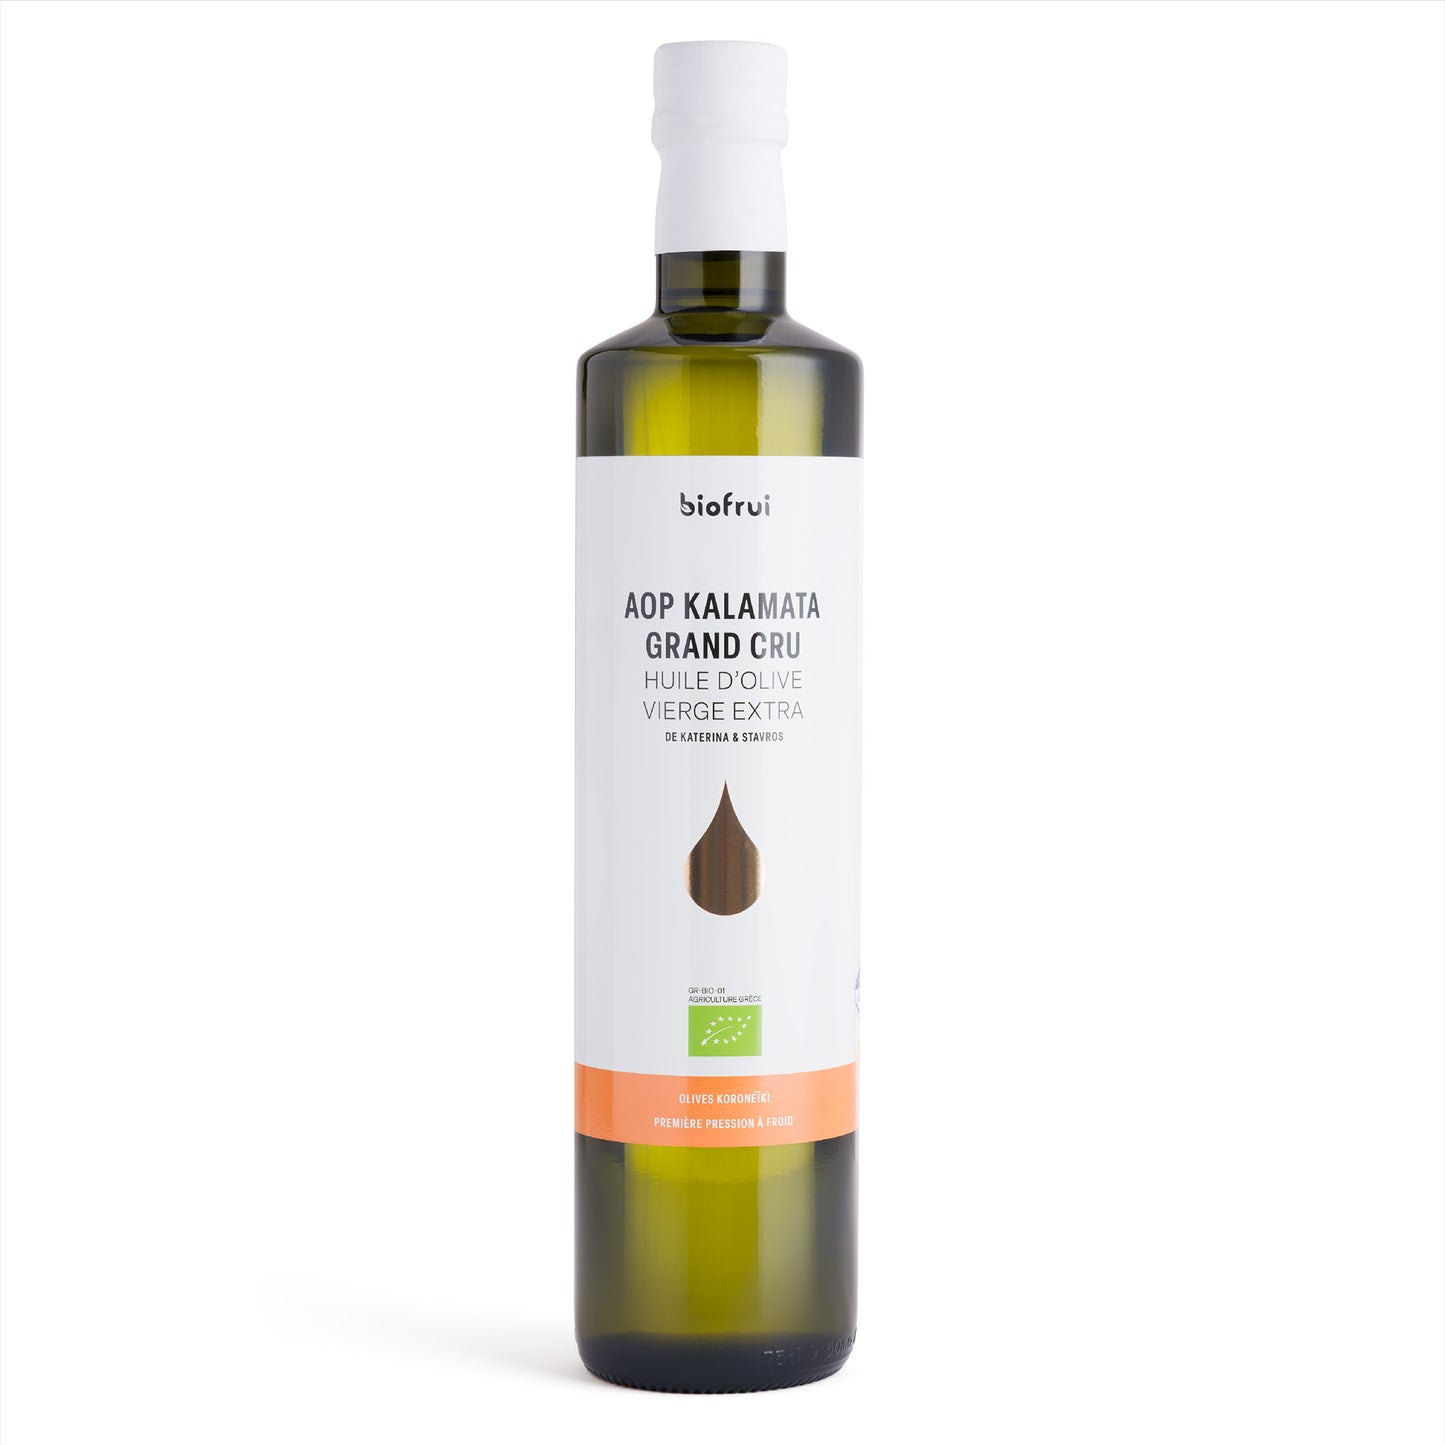 Huile d'olive Koronéïki bio de Kalamata AOP - Vierge Extra - Grand cru - Bouteille de 0.75 L